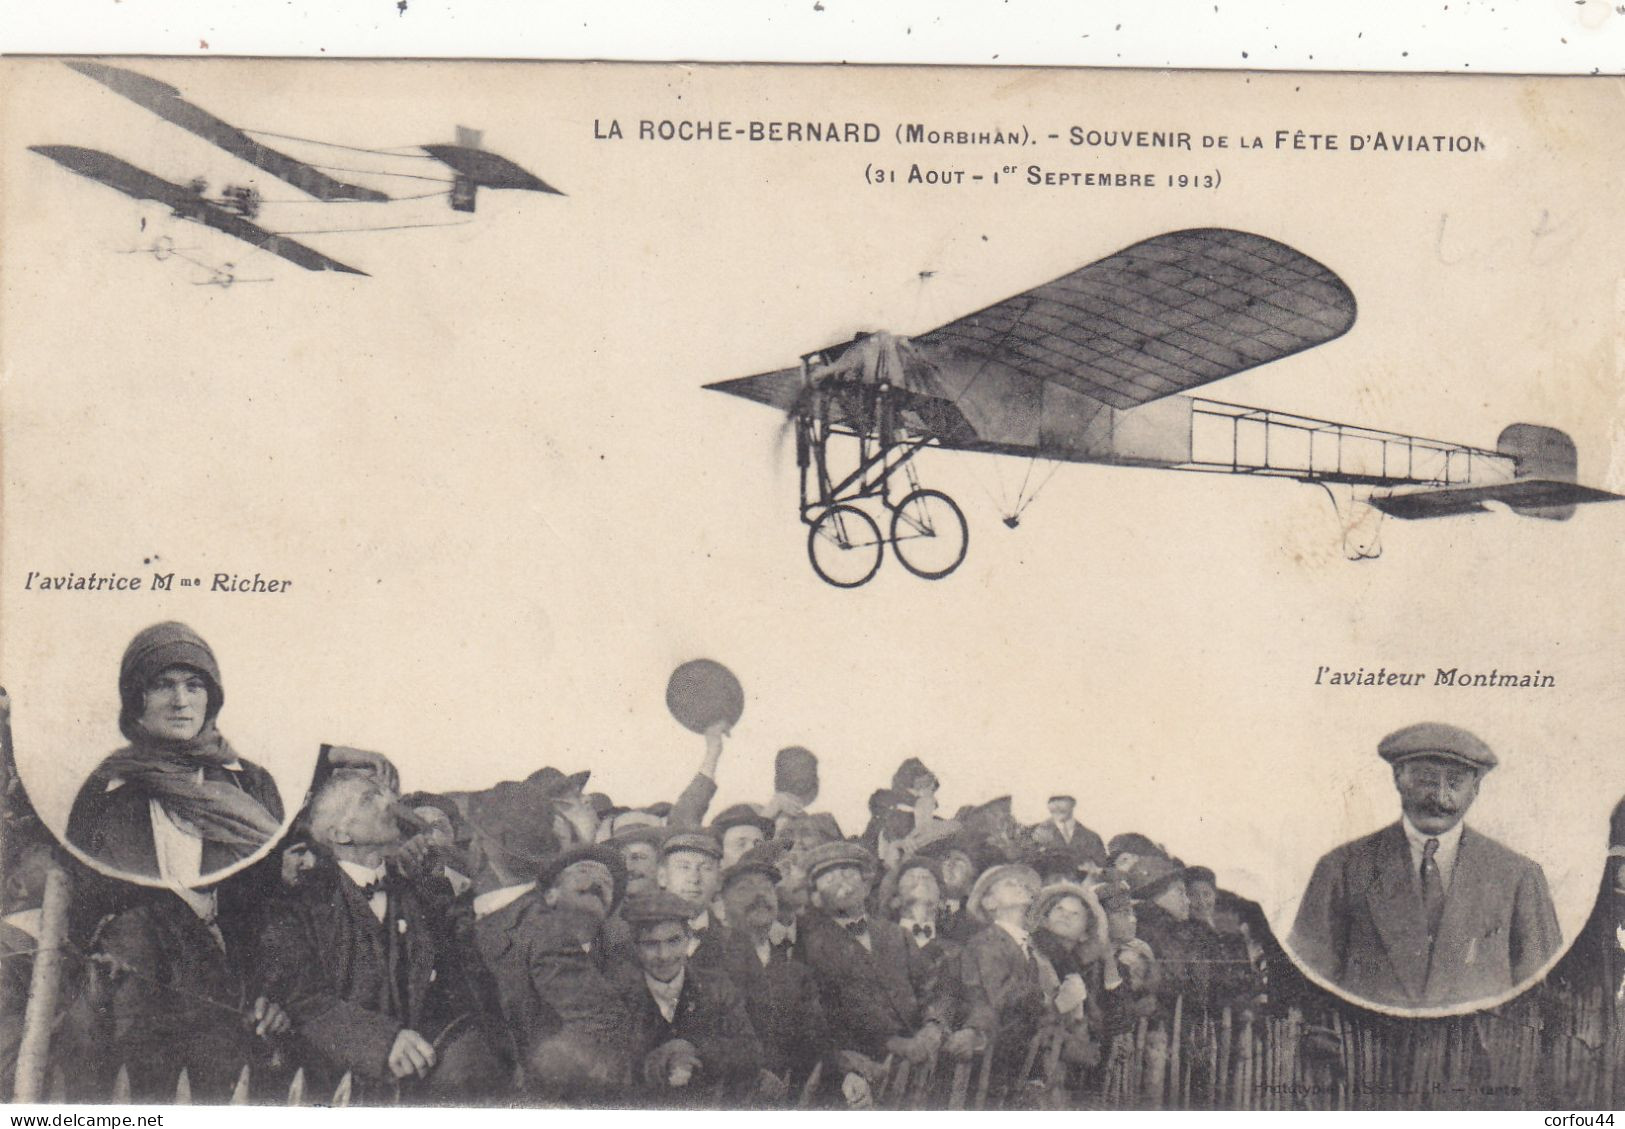 56 - LA ROCHE BERNARD ; Souvenir De La Fête D'Aviation 1913 - Aviateurs MONTMAIN Et Mme RICHER - Rare. - La Roche-Bernard